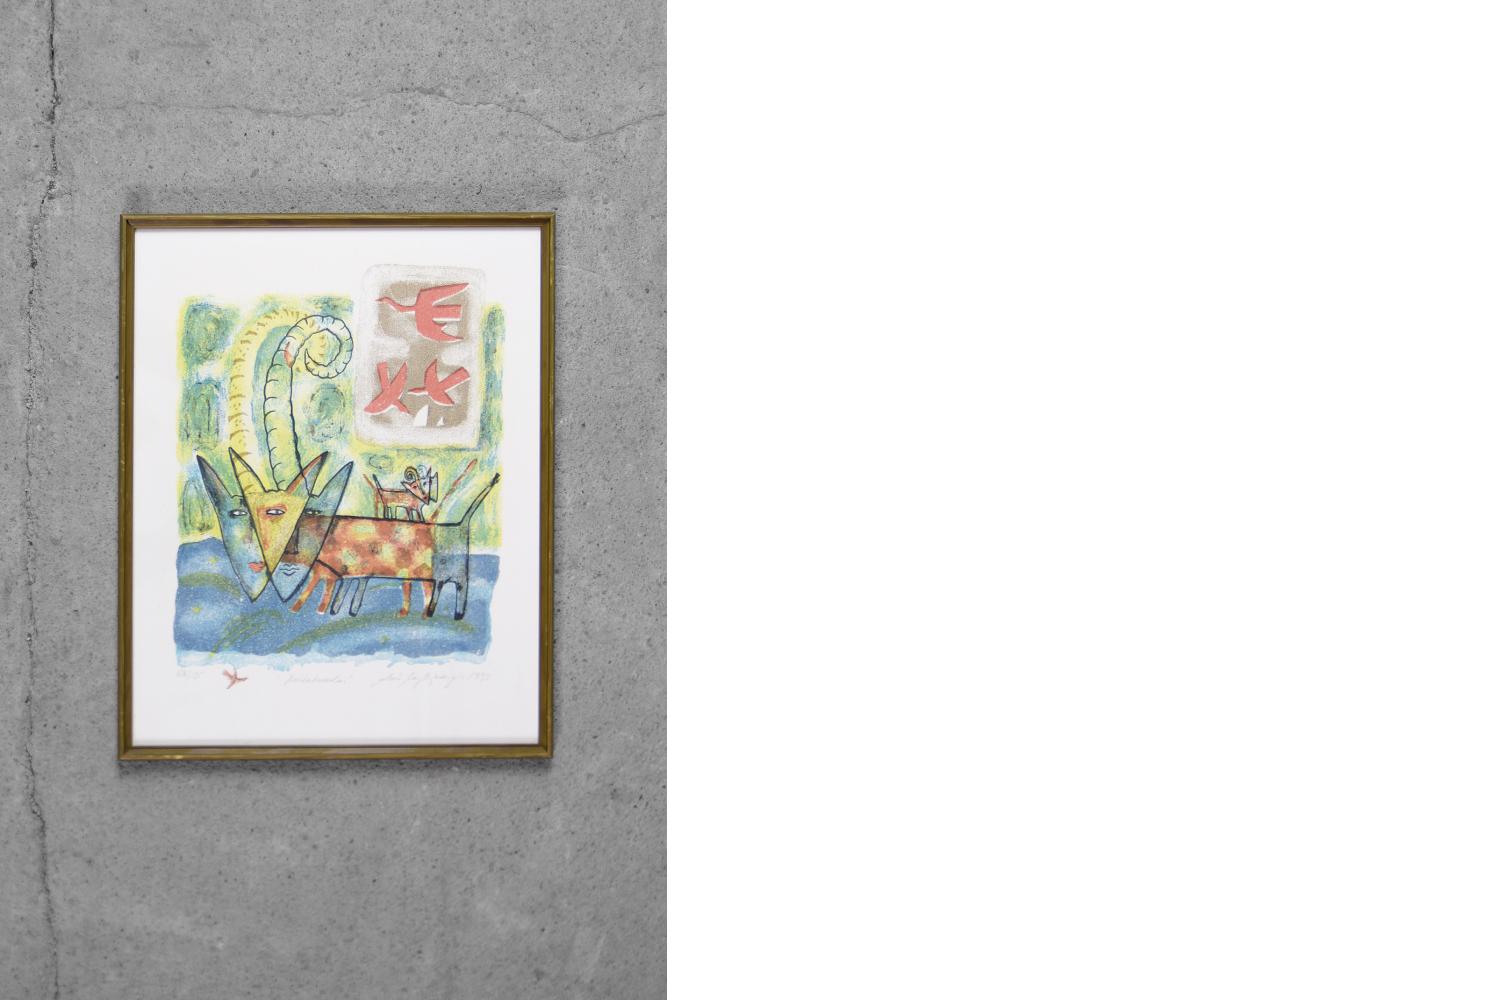 Aino Myllykangas, Le chien du ciel, 1993
Lithographie en couleur
Numéro 126/135
Cette œuvre est signée par l'artiste et porte un numéro et un titre individuels (au crayon).
Dimensions 49/39
Cette œuvre est encadrée.

Aino Myllykangas est née en 1948